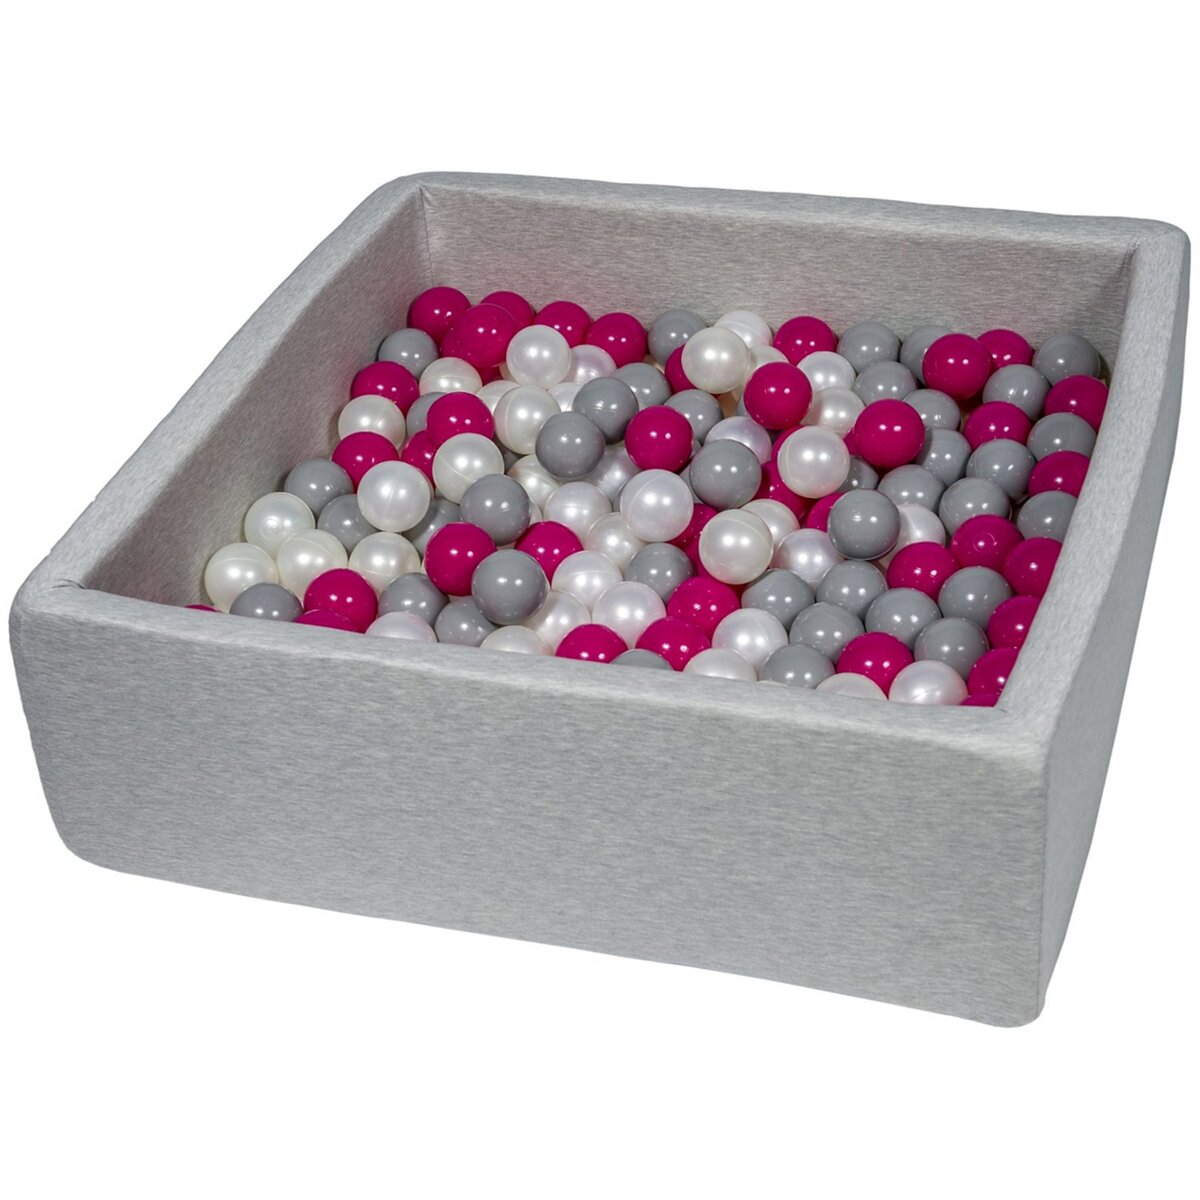  Piscine à balles pour enfant, 90x90 cm, Aire de jeu + 200 balles perle, rose, gris